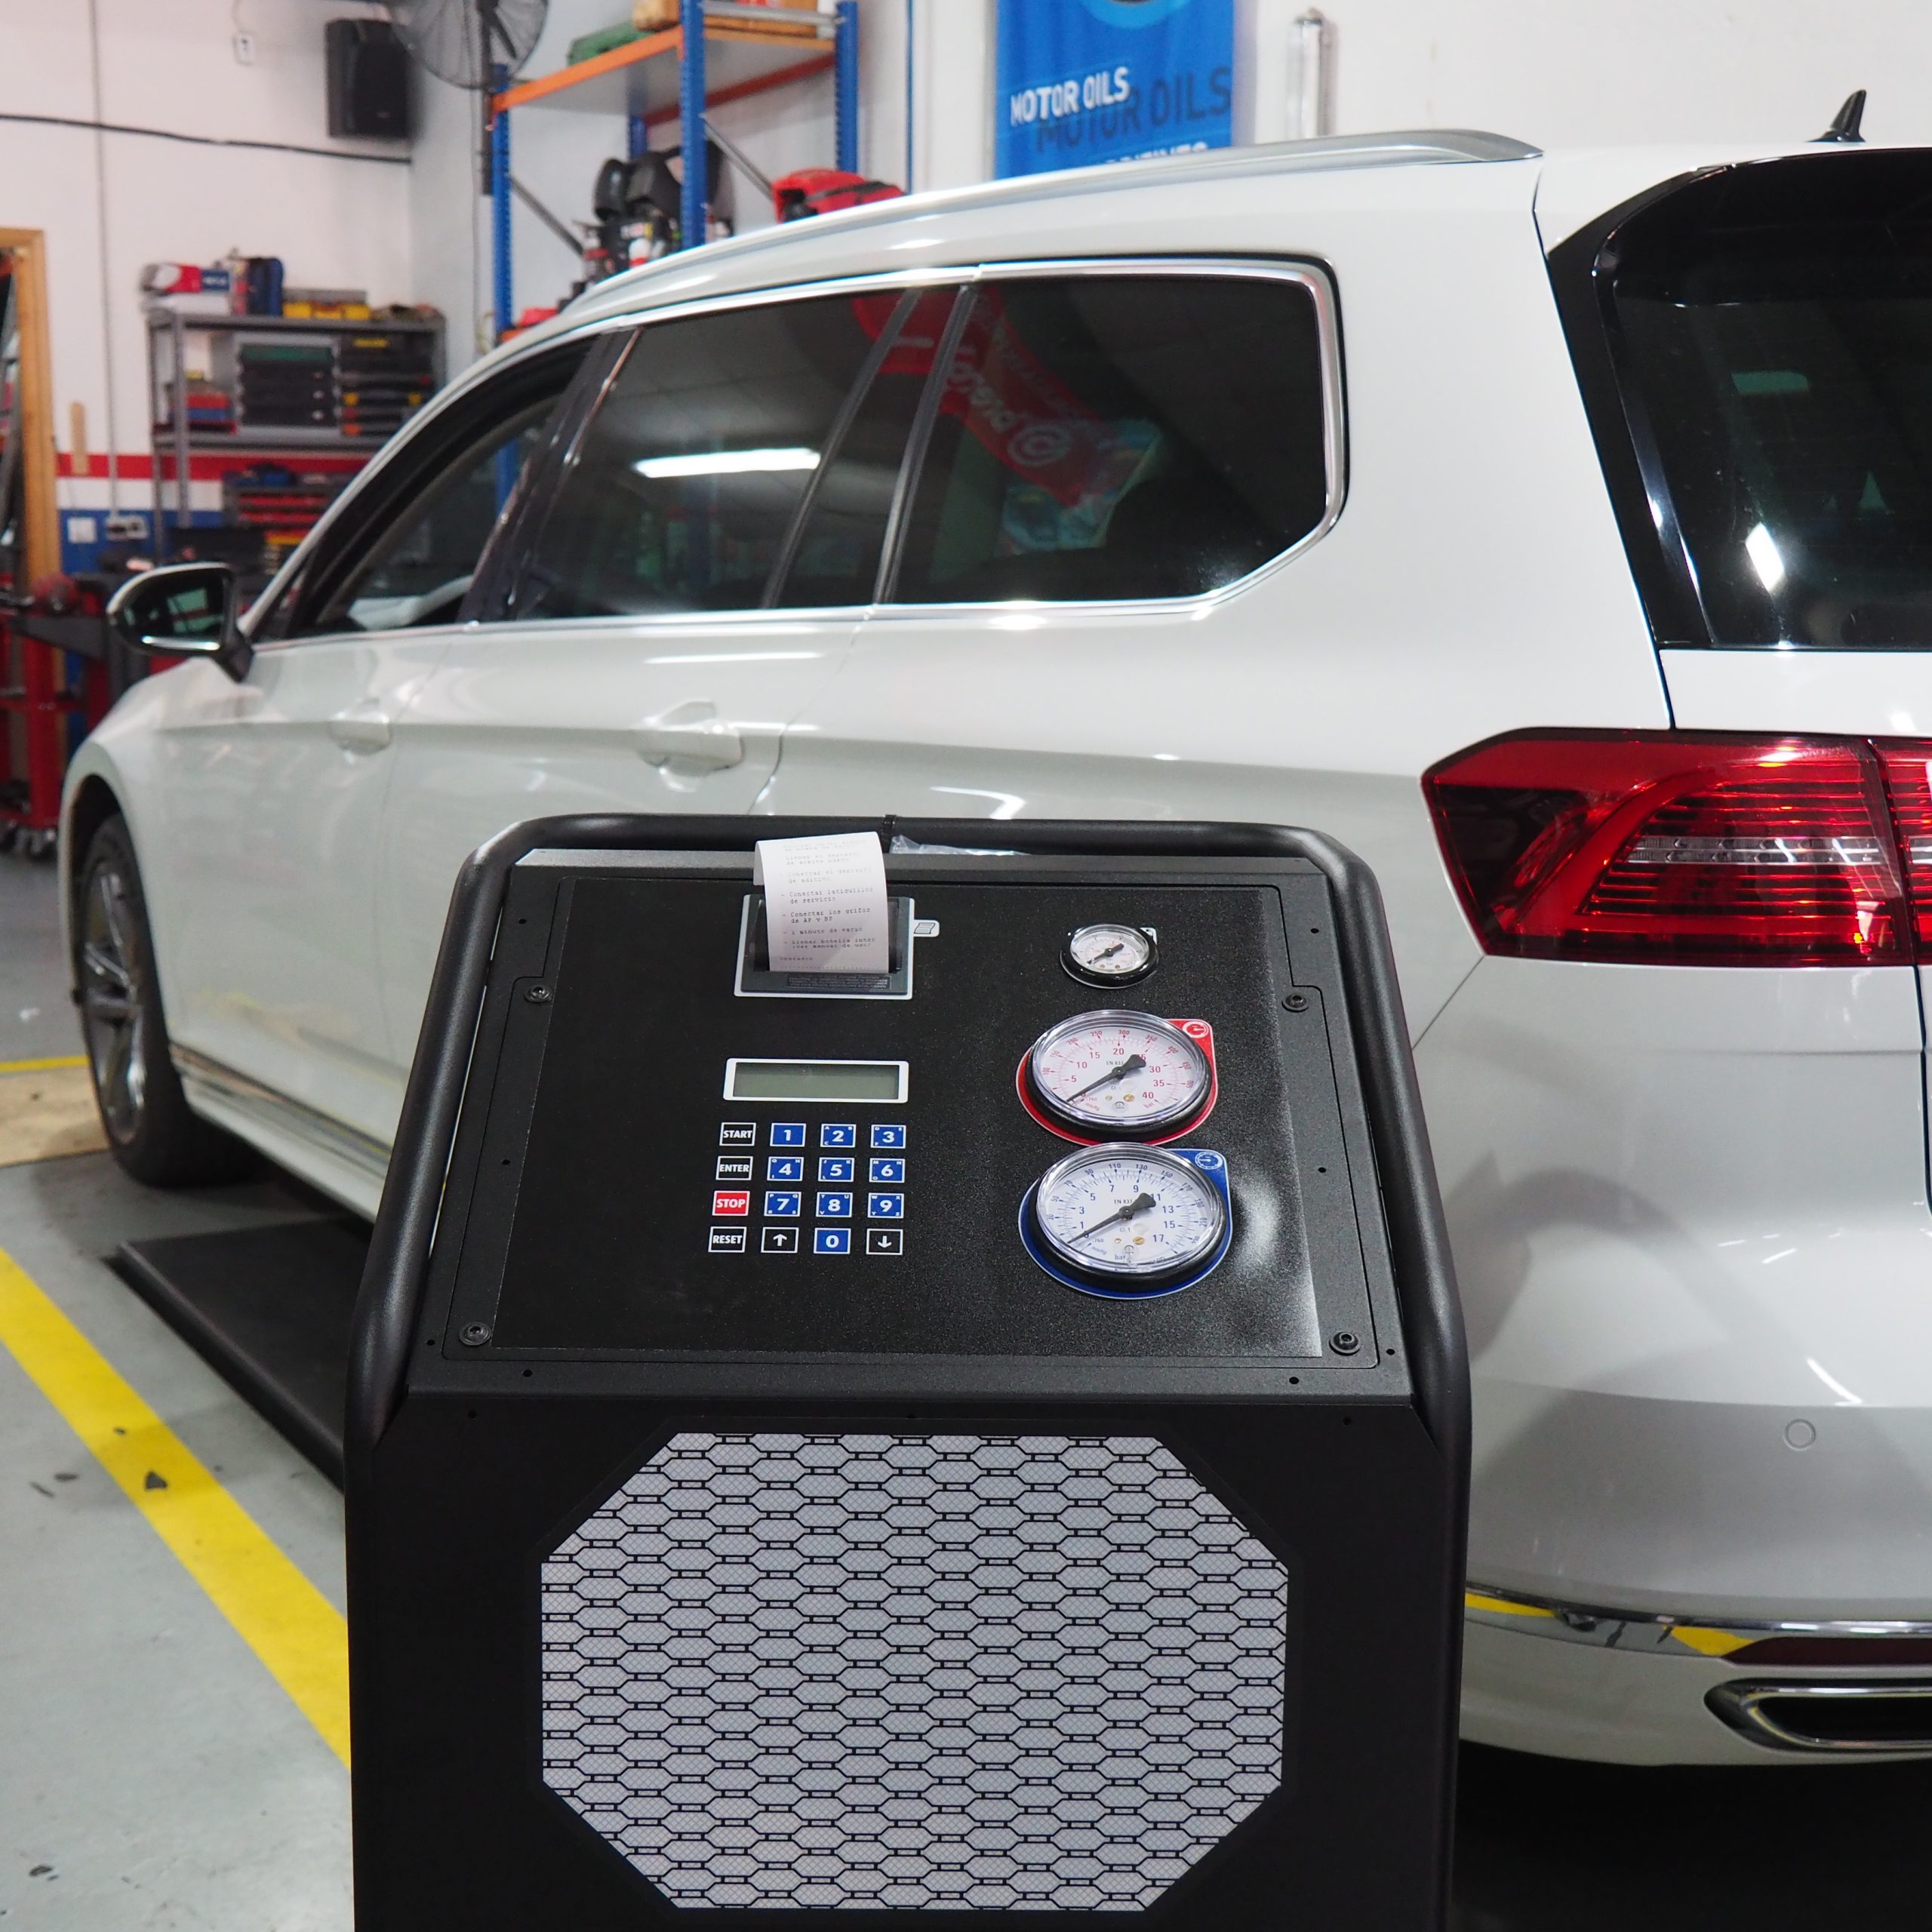 El aire acondicionado de tu coche en las mejores manos: presentamos nuestra nueva maquina de recarga con gas R1234YF